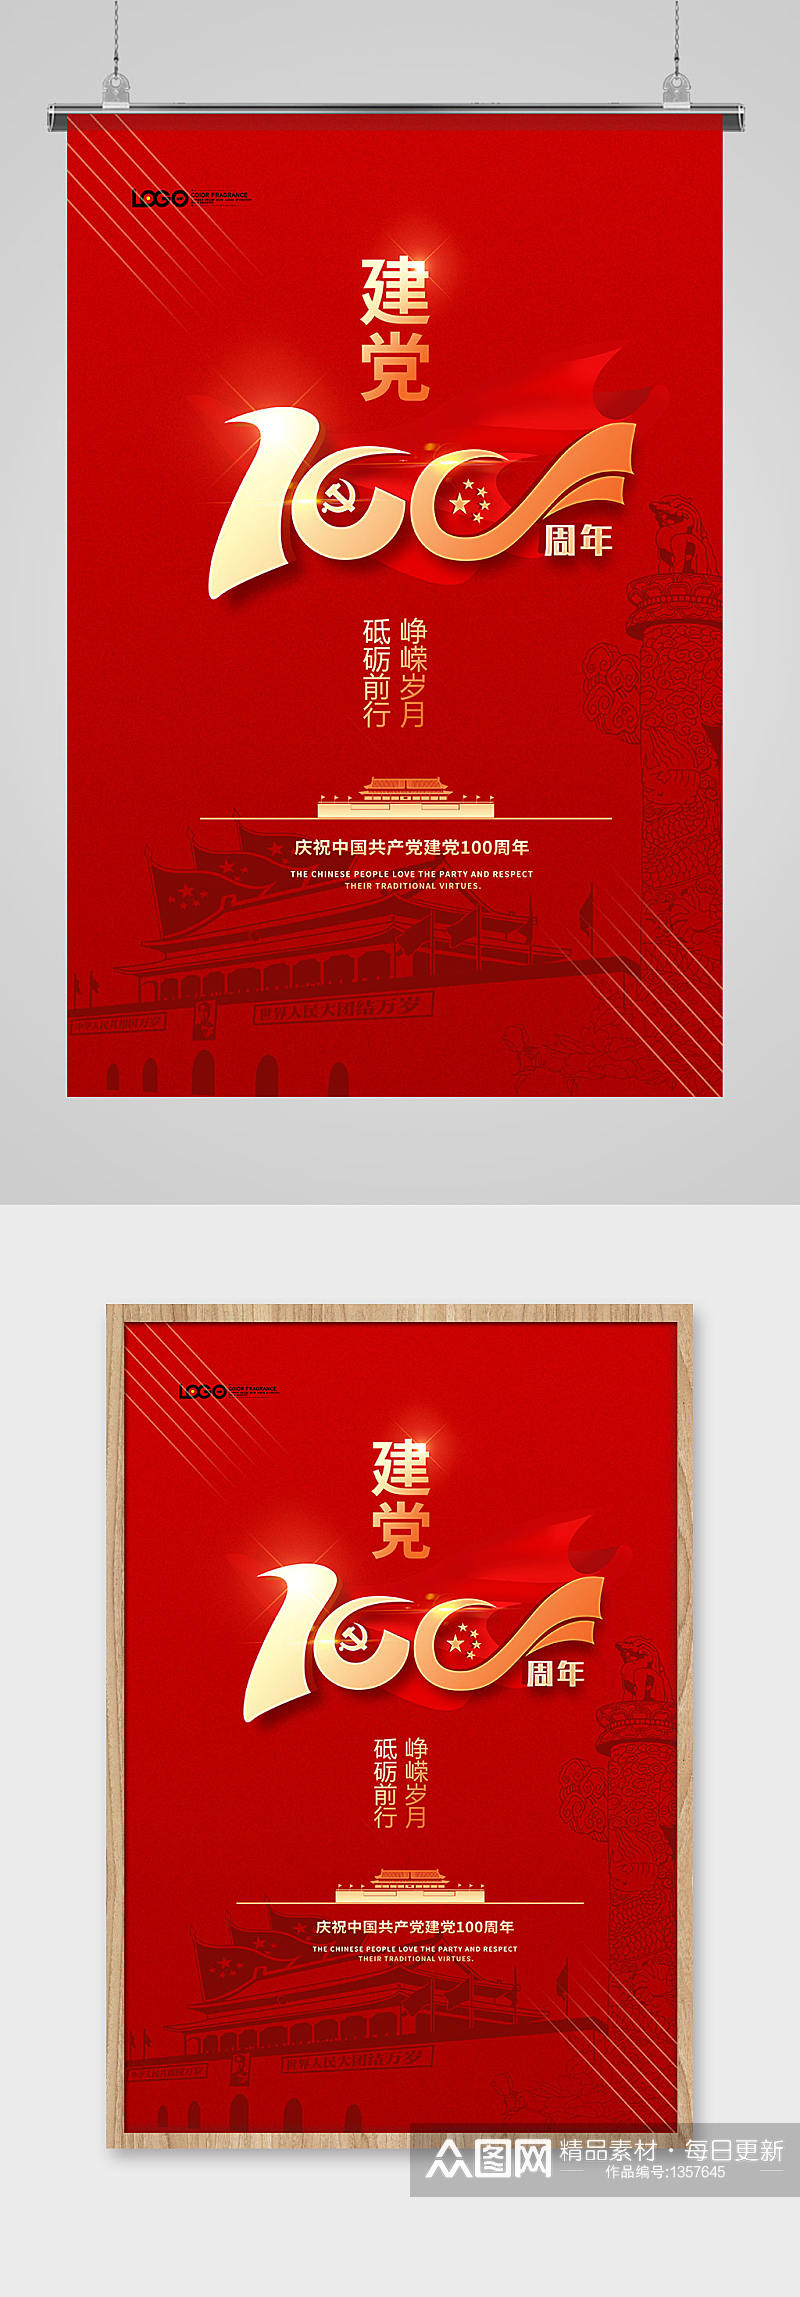 红色建党100周年党建宣传海报设计素材